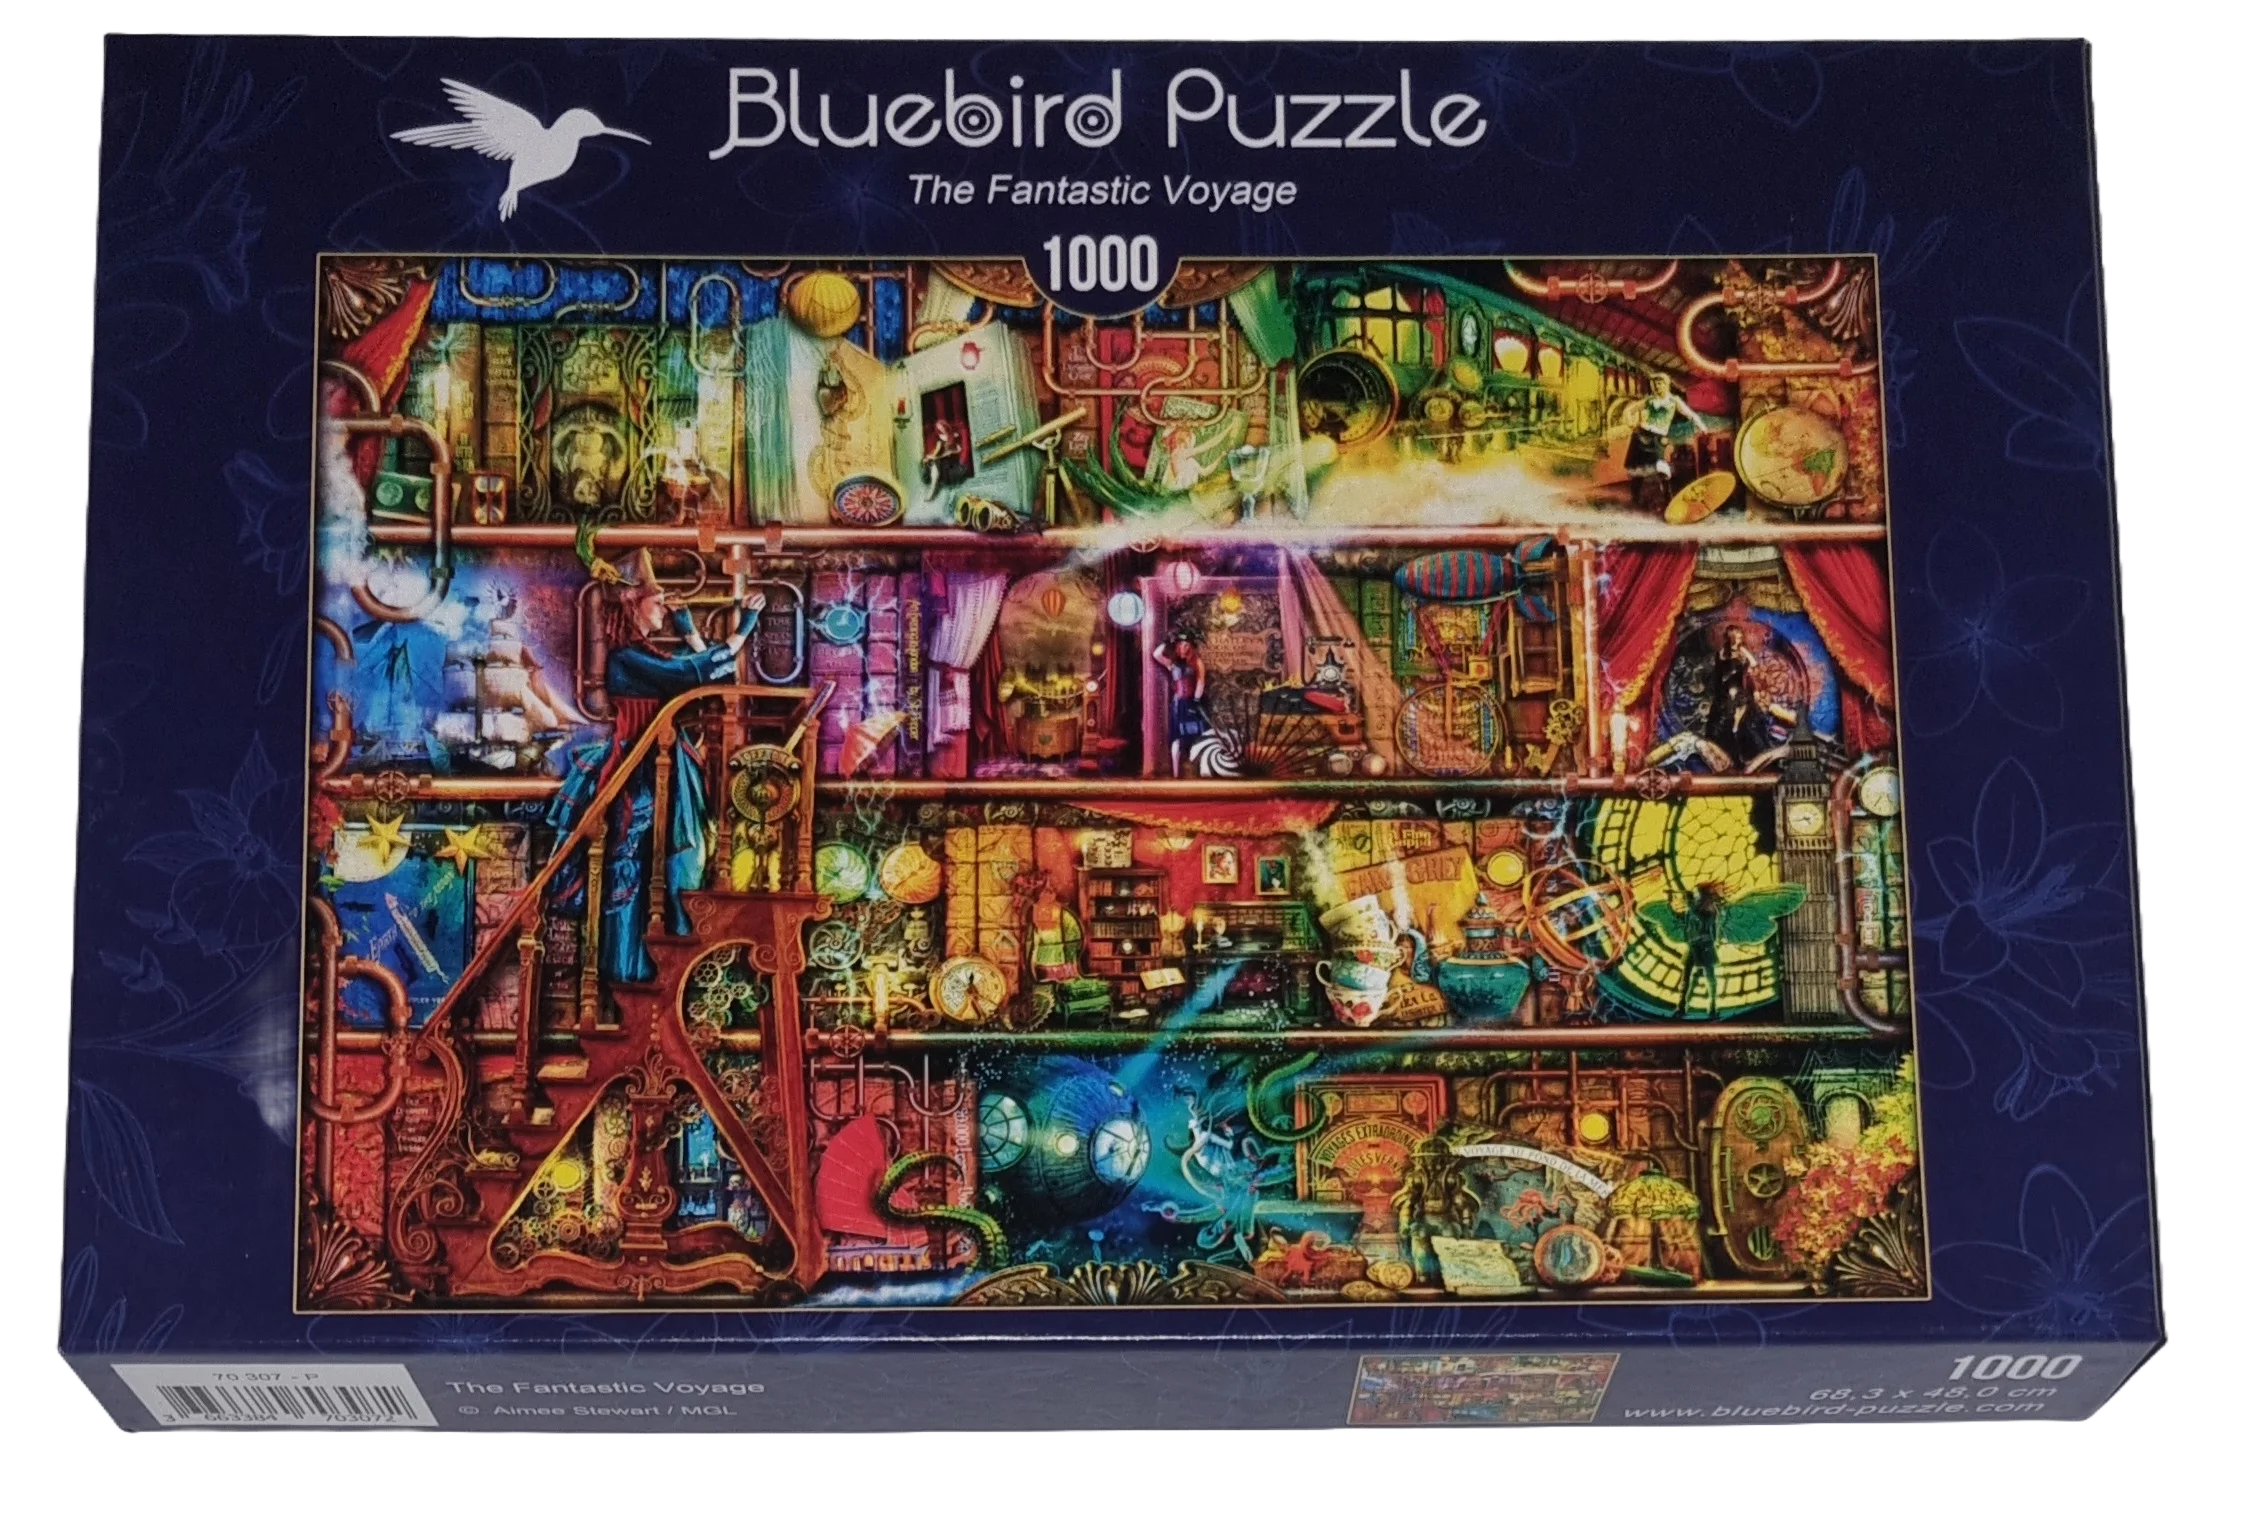 Art by Bluebird Puzzle 1000 Teile 70307 The fantastisch voyage